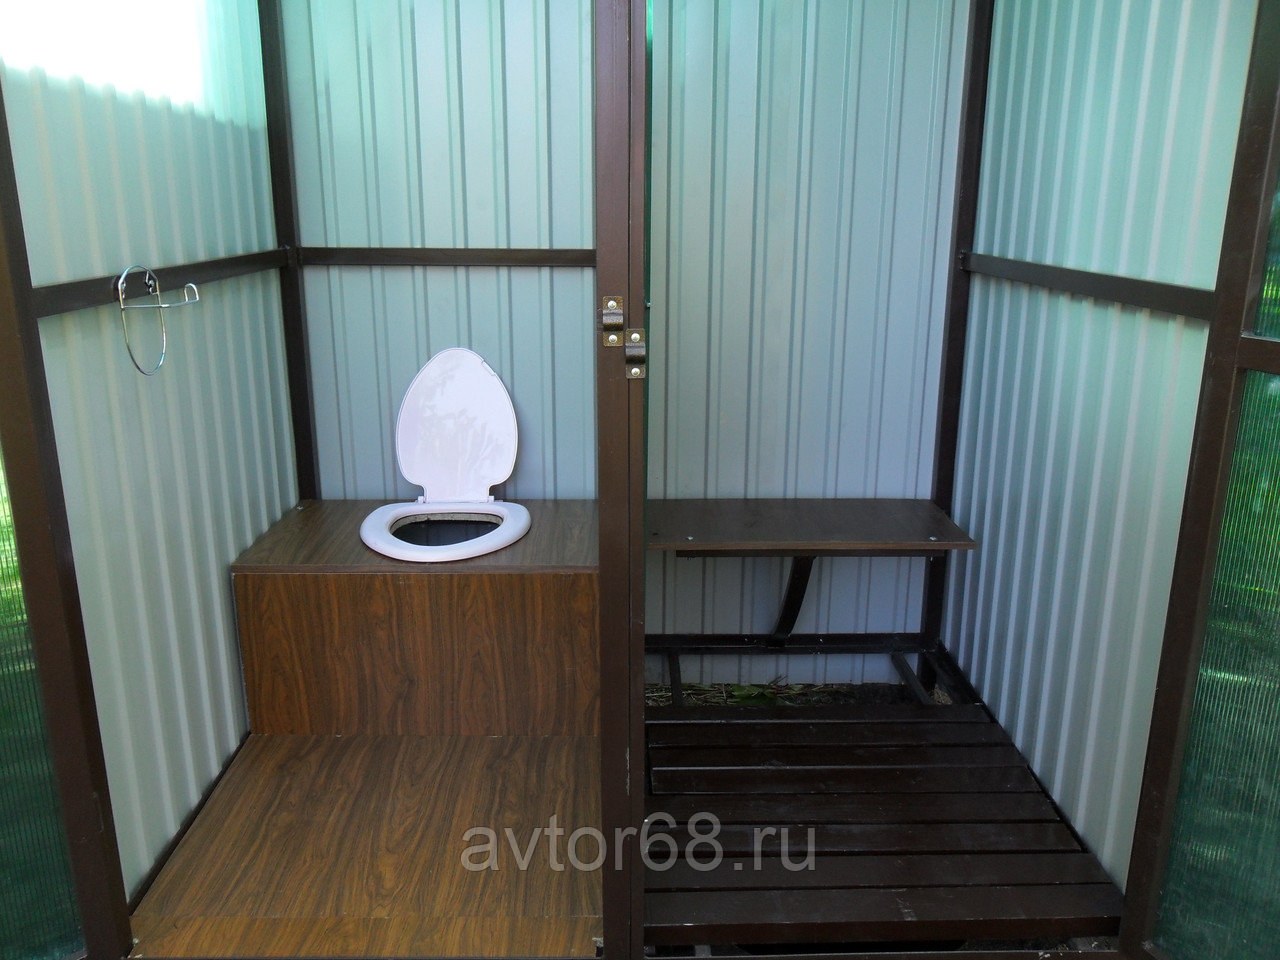 Ремонт душевых кабин в Челябинске